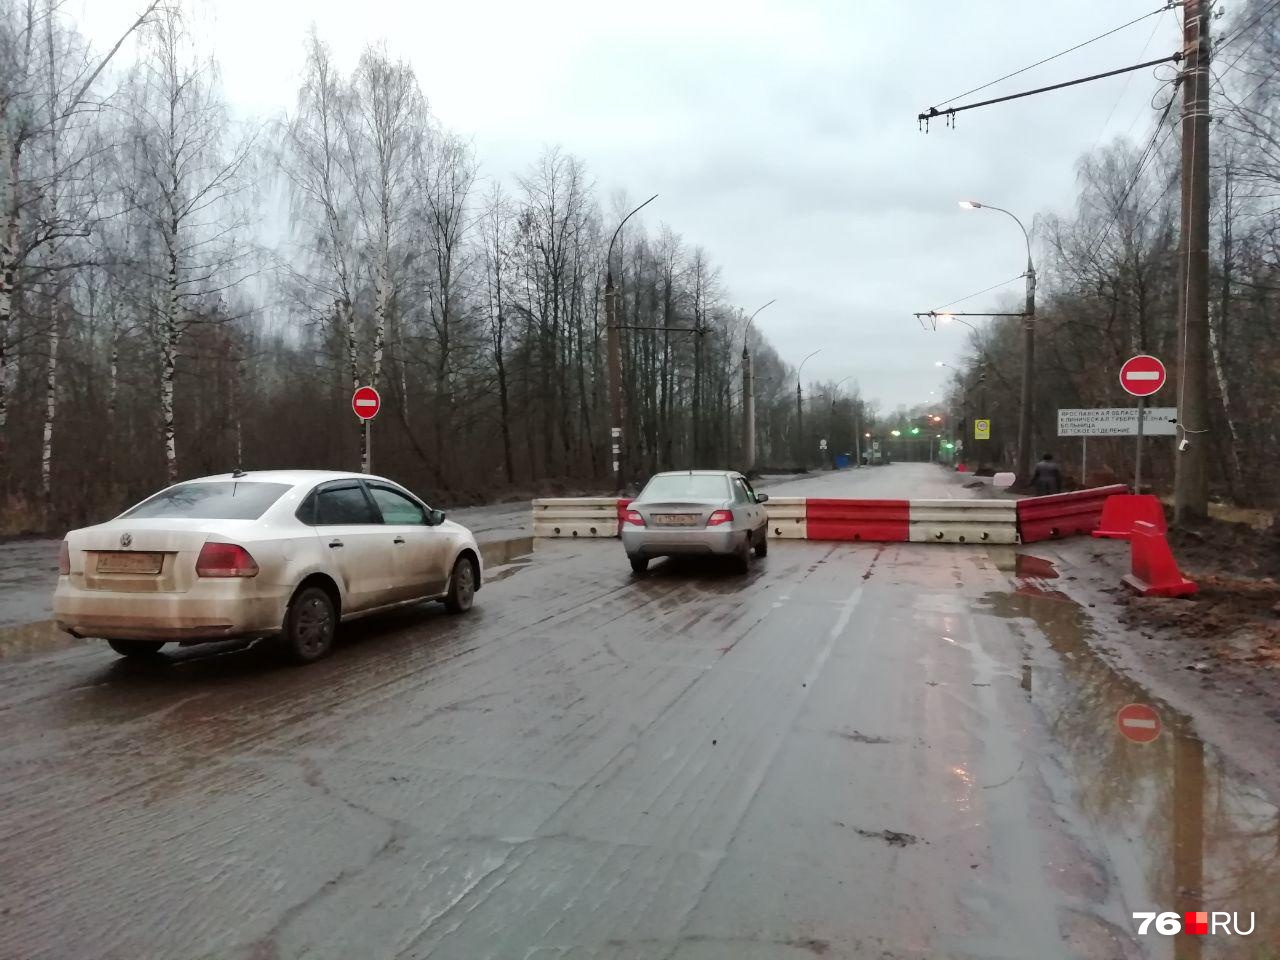 Сейчас закрыт проезд по Тутаевскому шоссе от улицы Большой Норской до улицы Панина